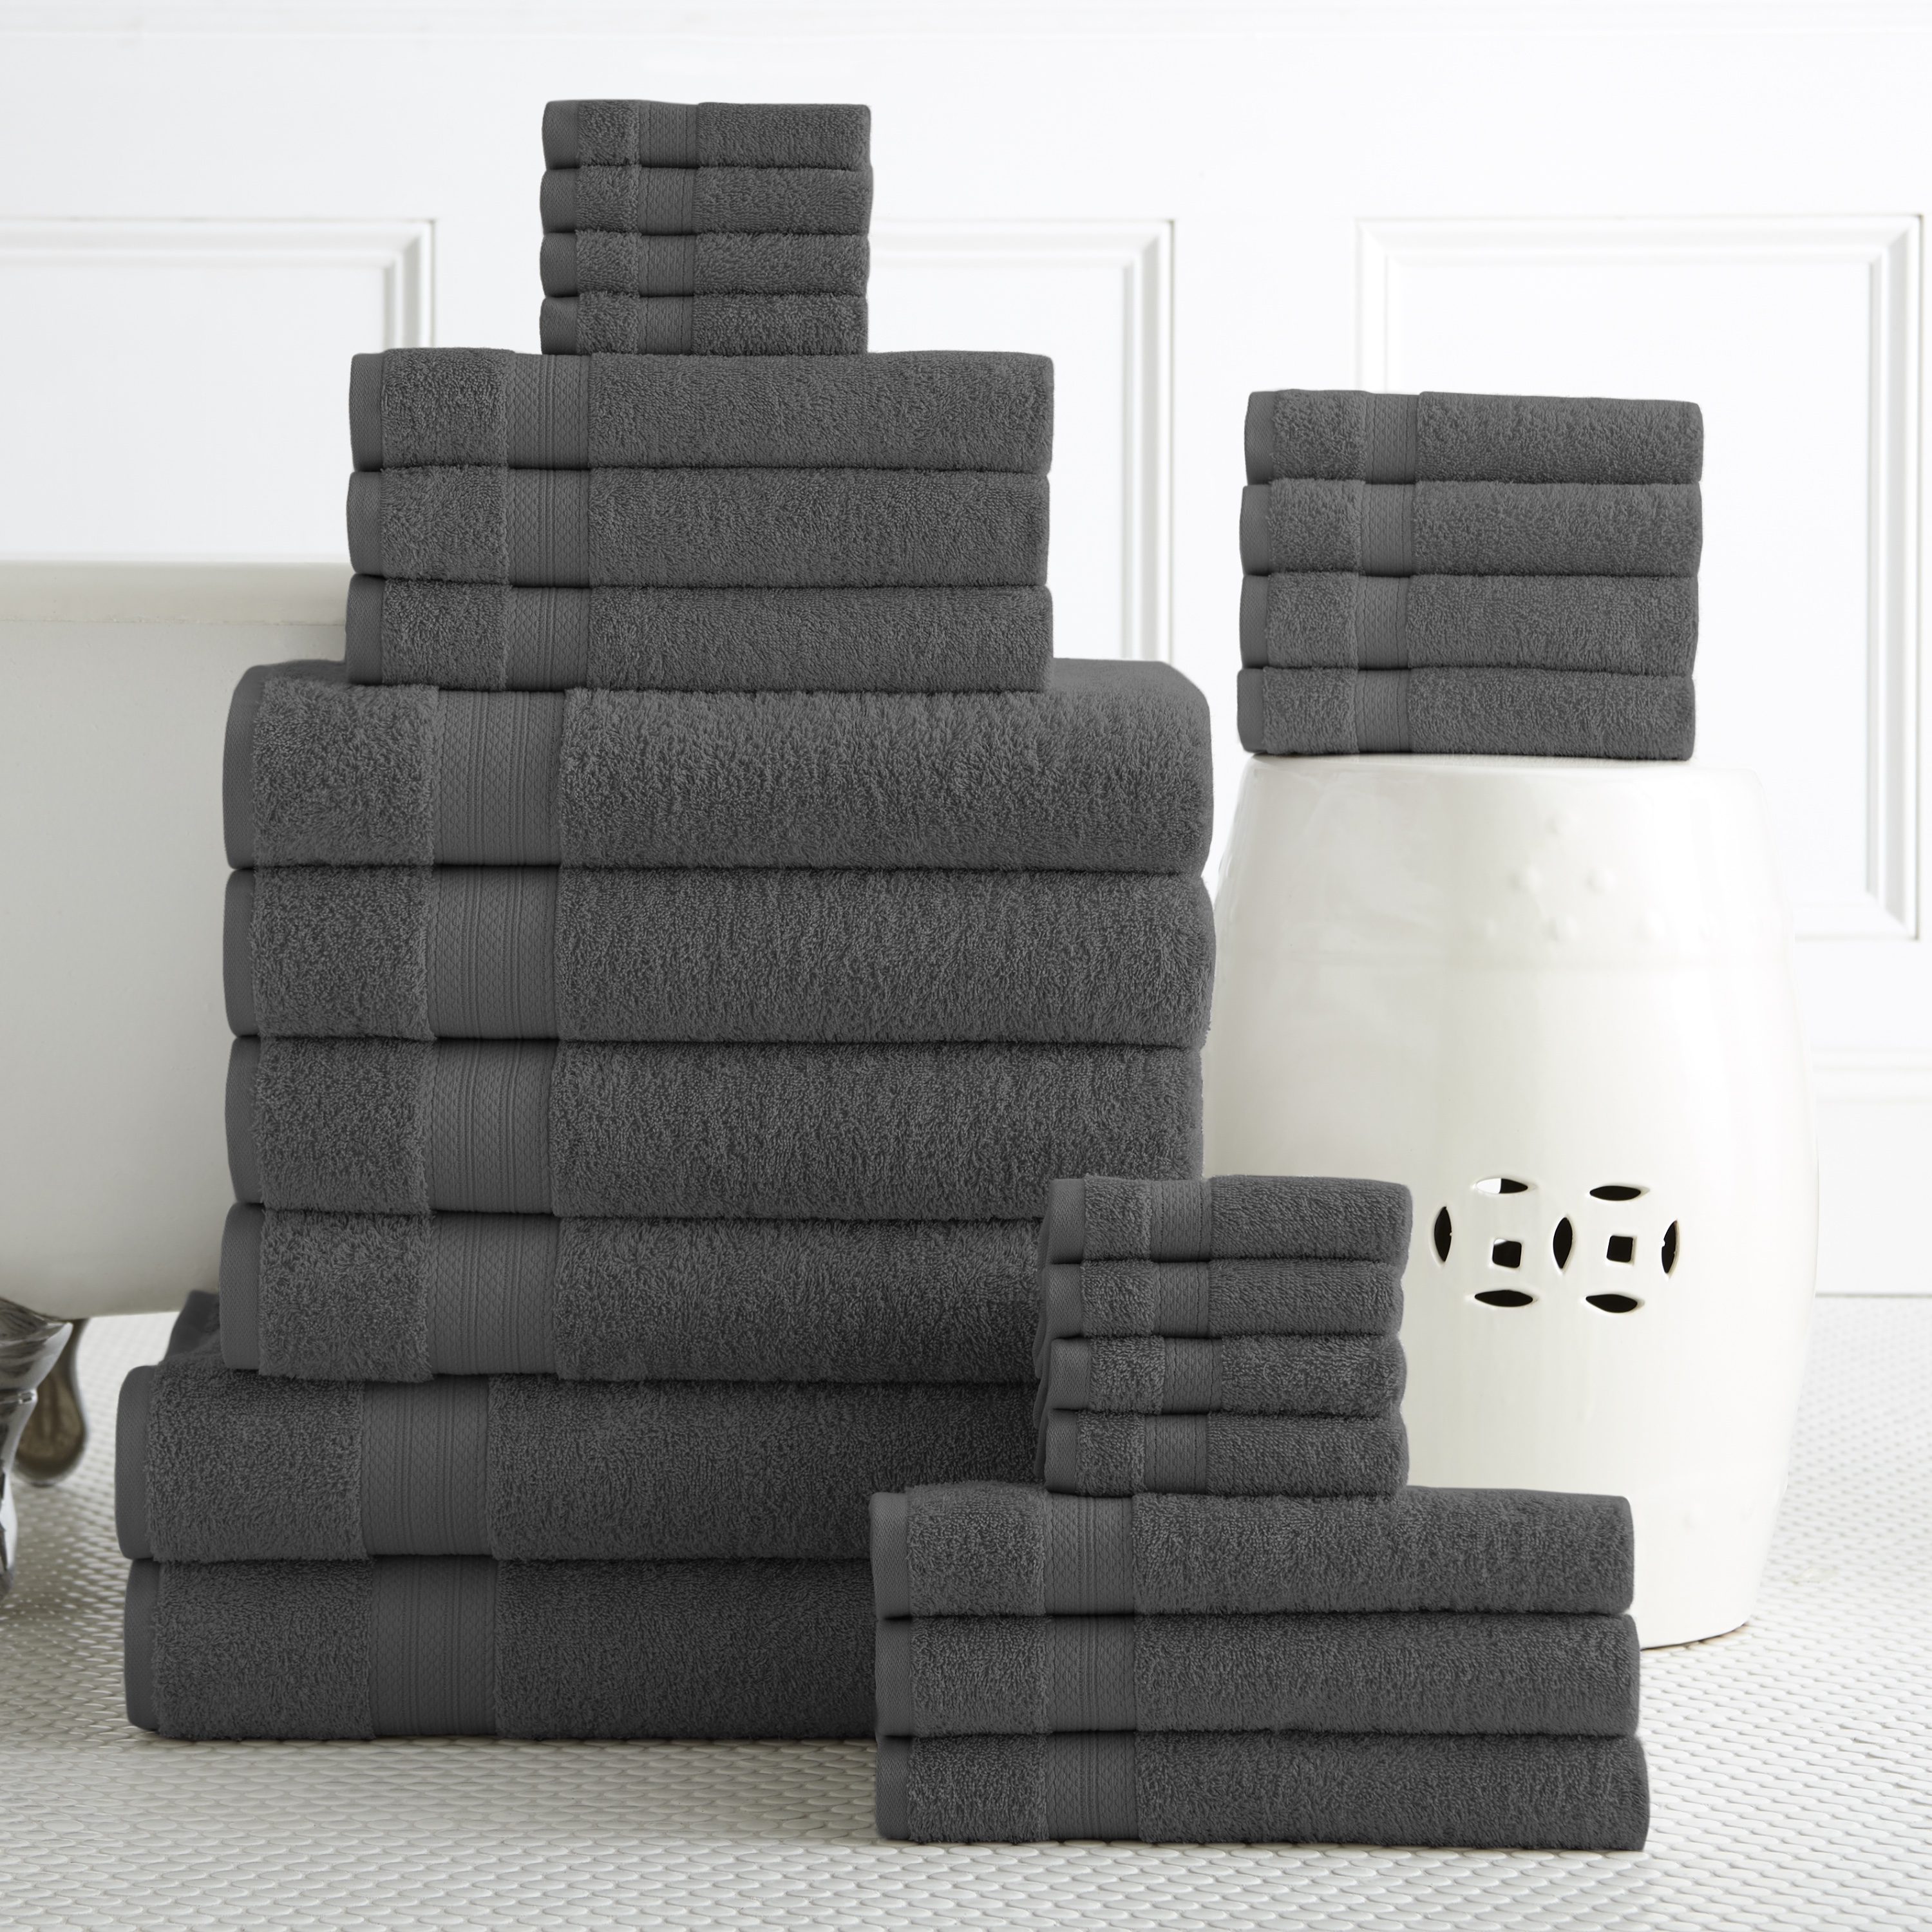 100-percent Plush Cotton 24-piece Economic Bath Towel set - image 2 of 4